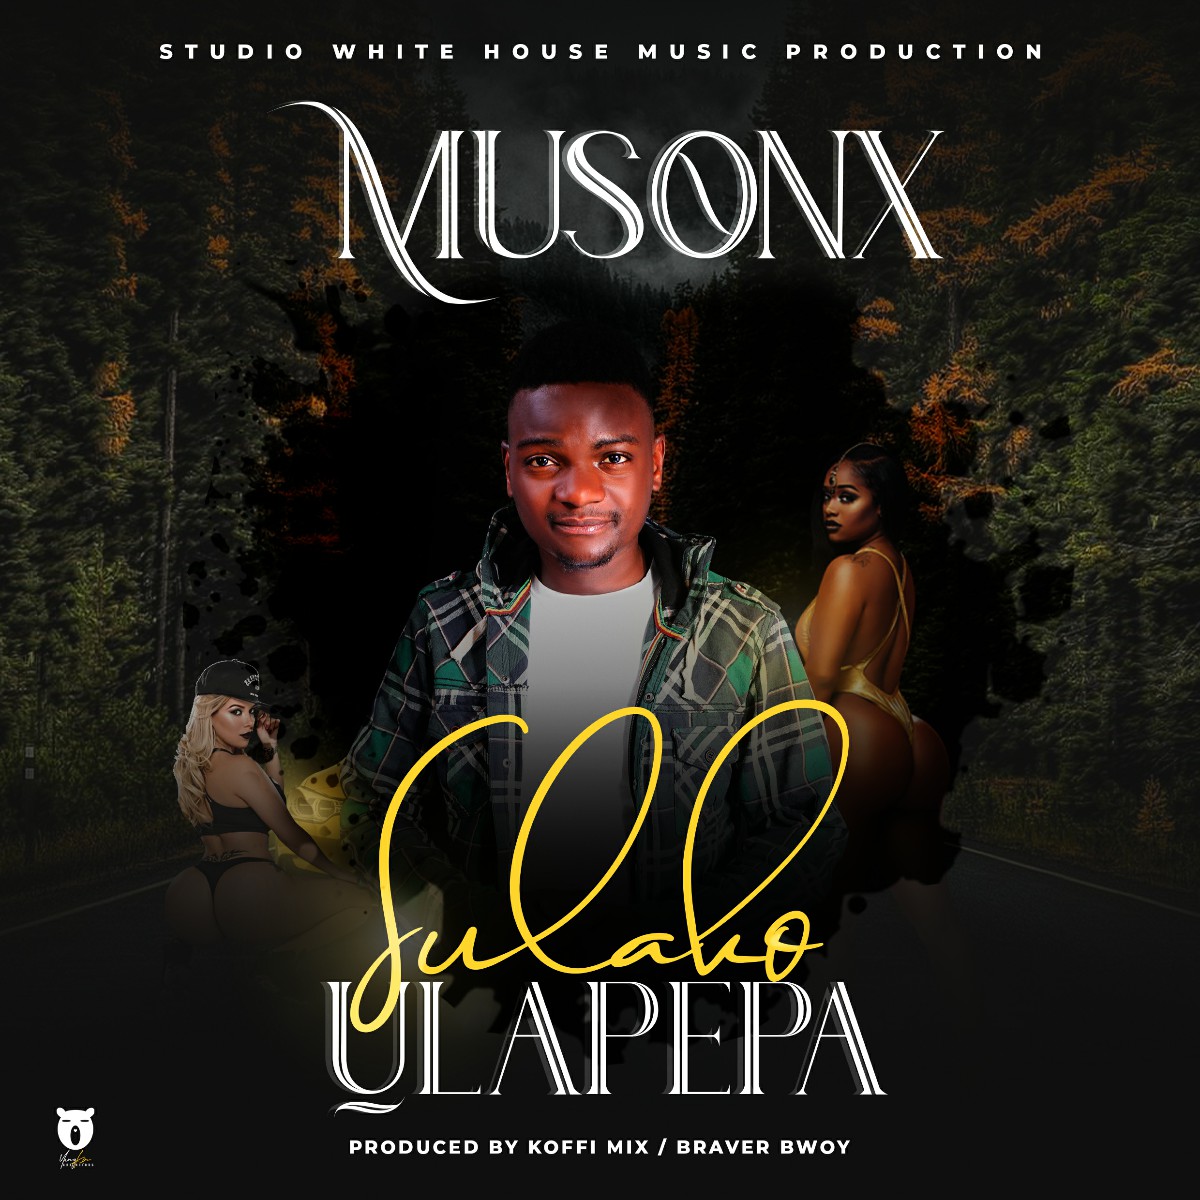 Musonx - Sulako Ulapepa (Prod. Kofi Mix)